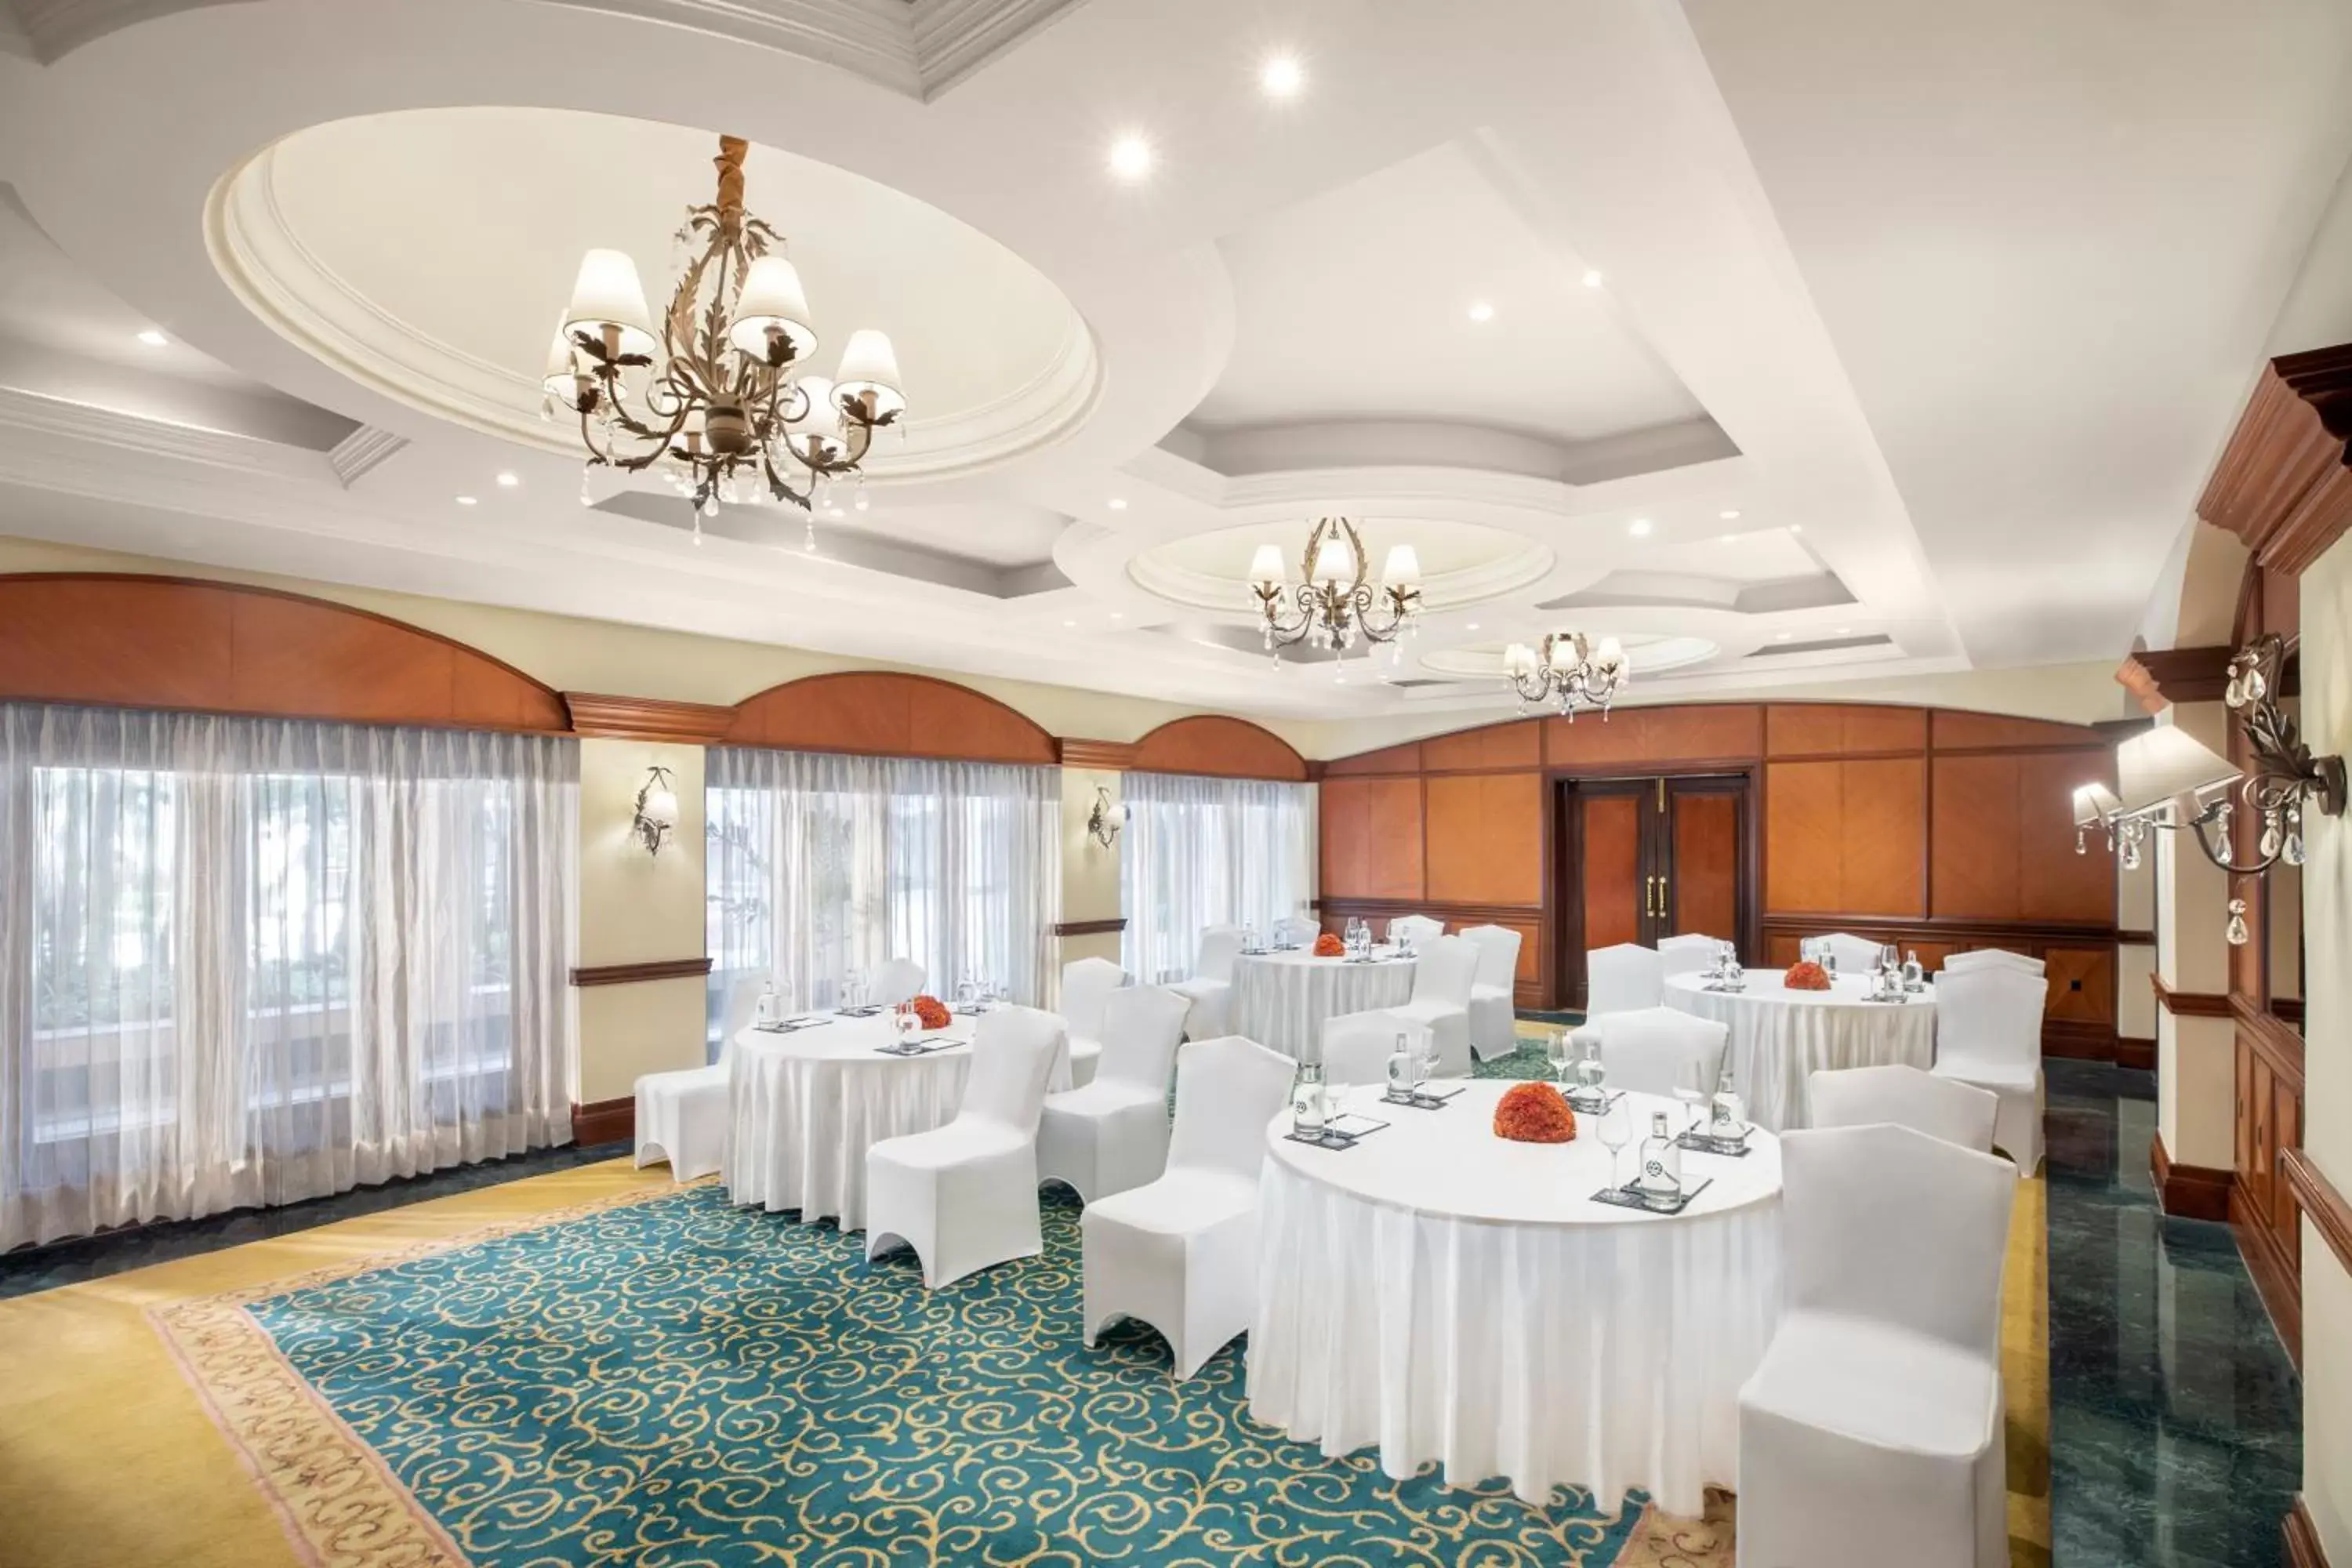 Banquet/Function facilities, Banquet Facilities in Taj Exotica Resort & Spa, Goa